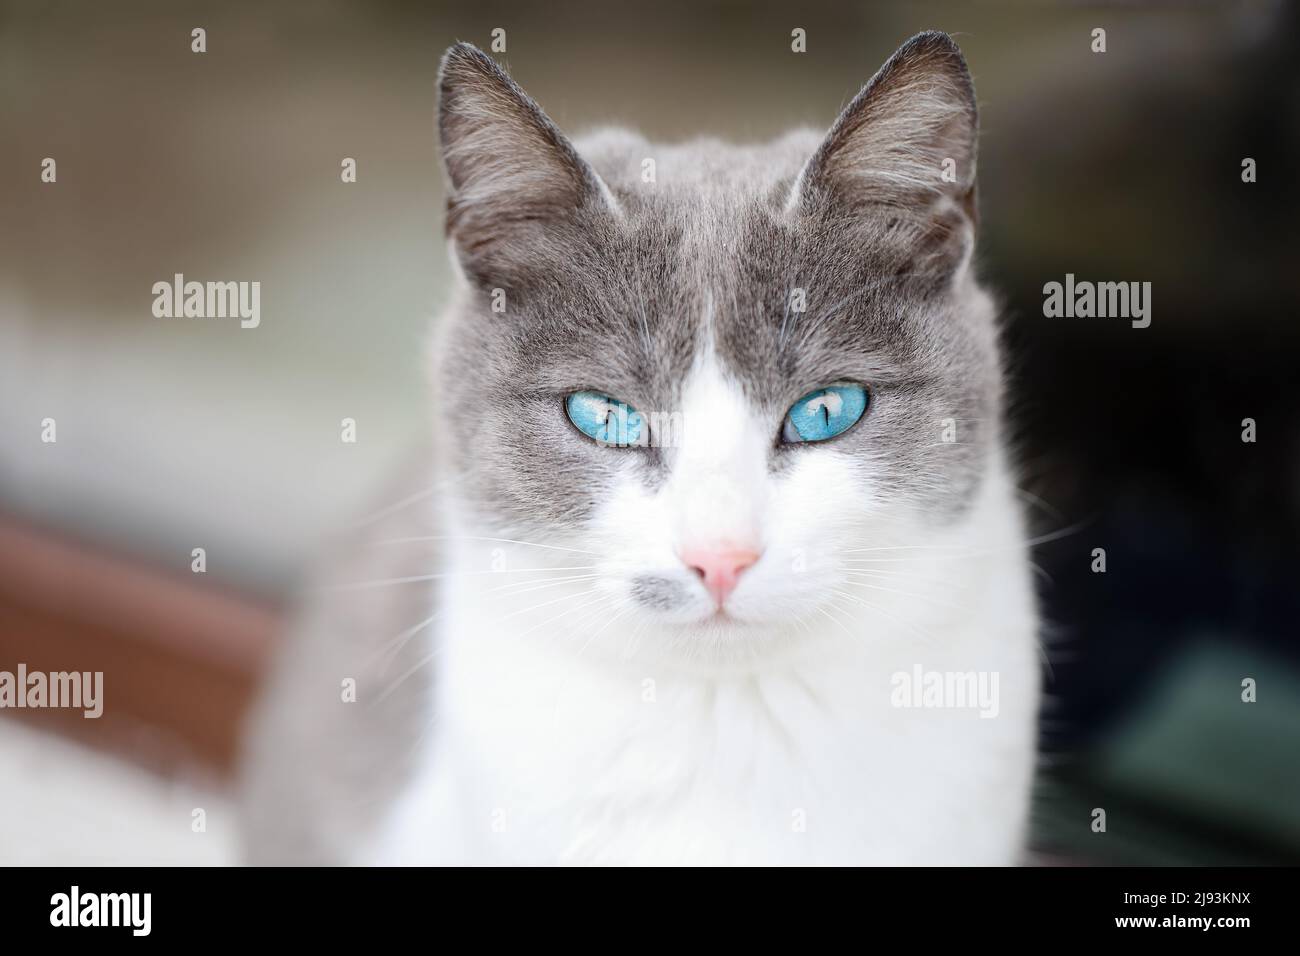 Nahaufnahme eines wunderschönen weißen und grauen weiblichen Kätzchens mit türkisblauen Augen, das auf einer Fensterbank sitzt und zur Kamera blickt Stockfoto